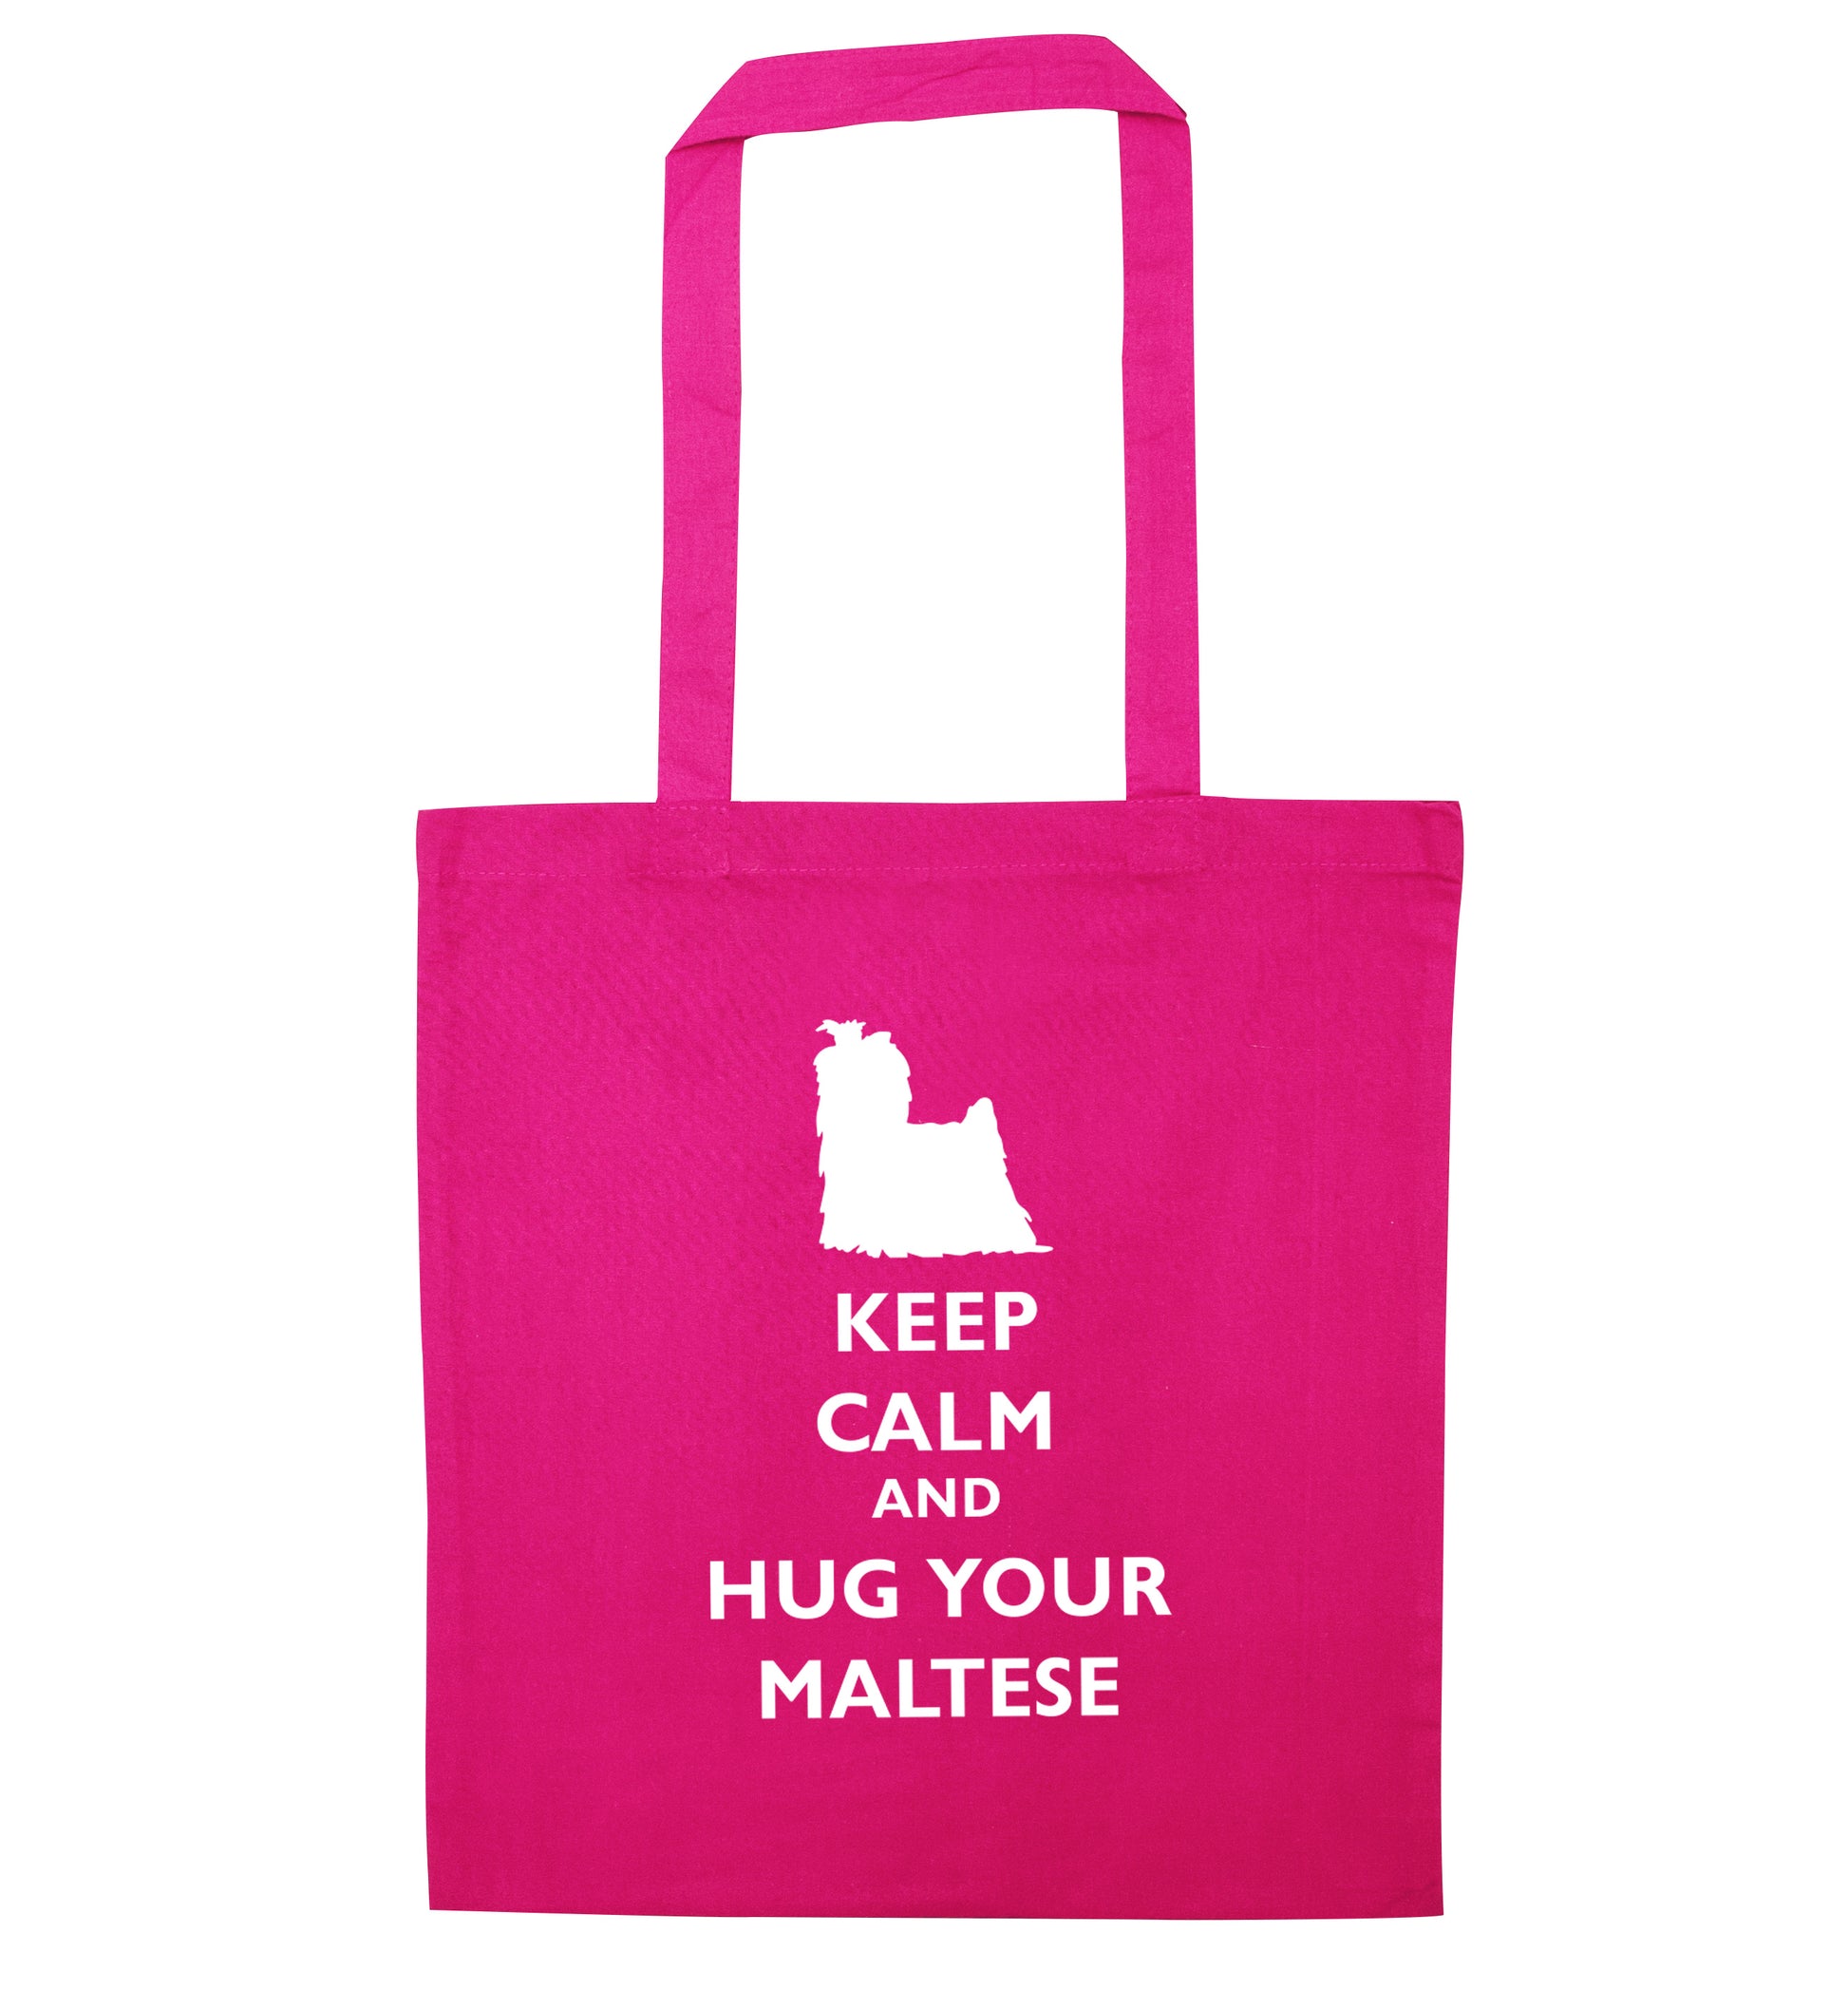 Keep calm and hug your maltese pink tote bag